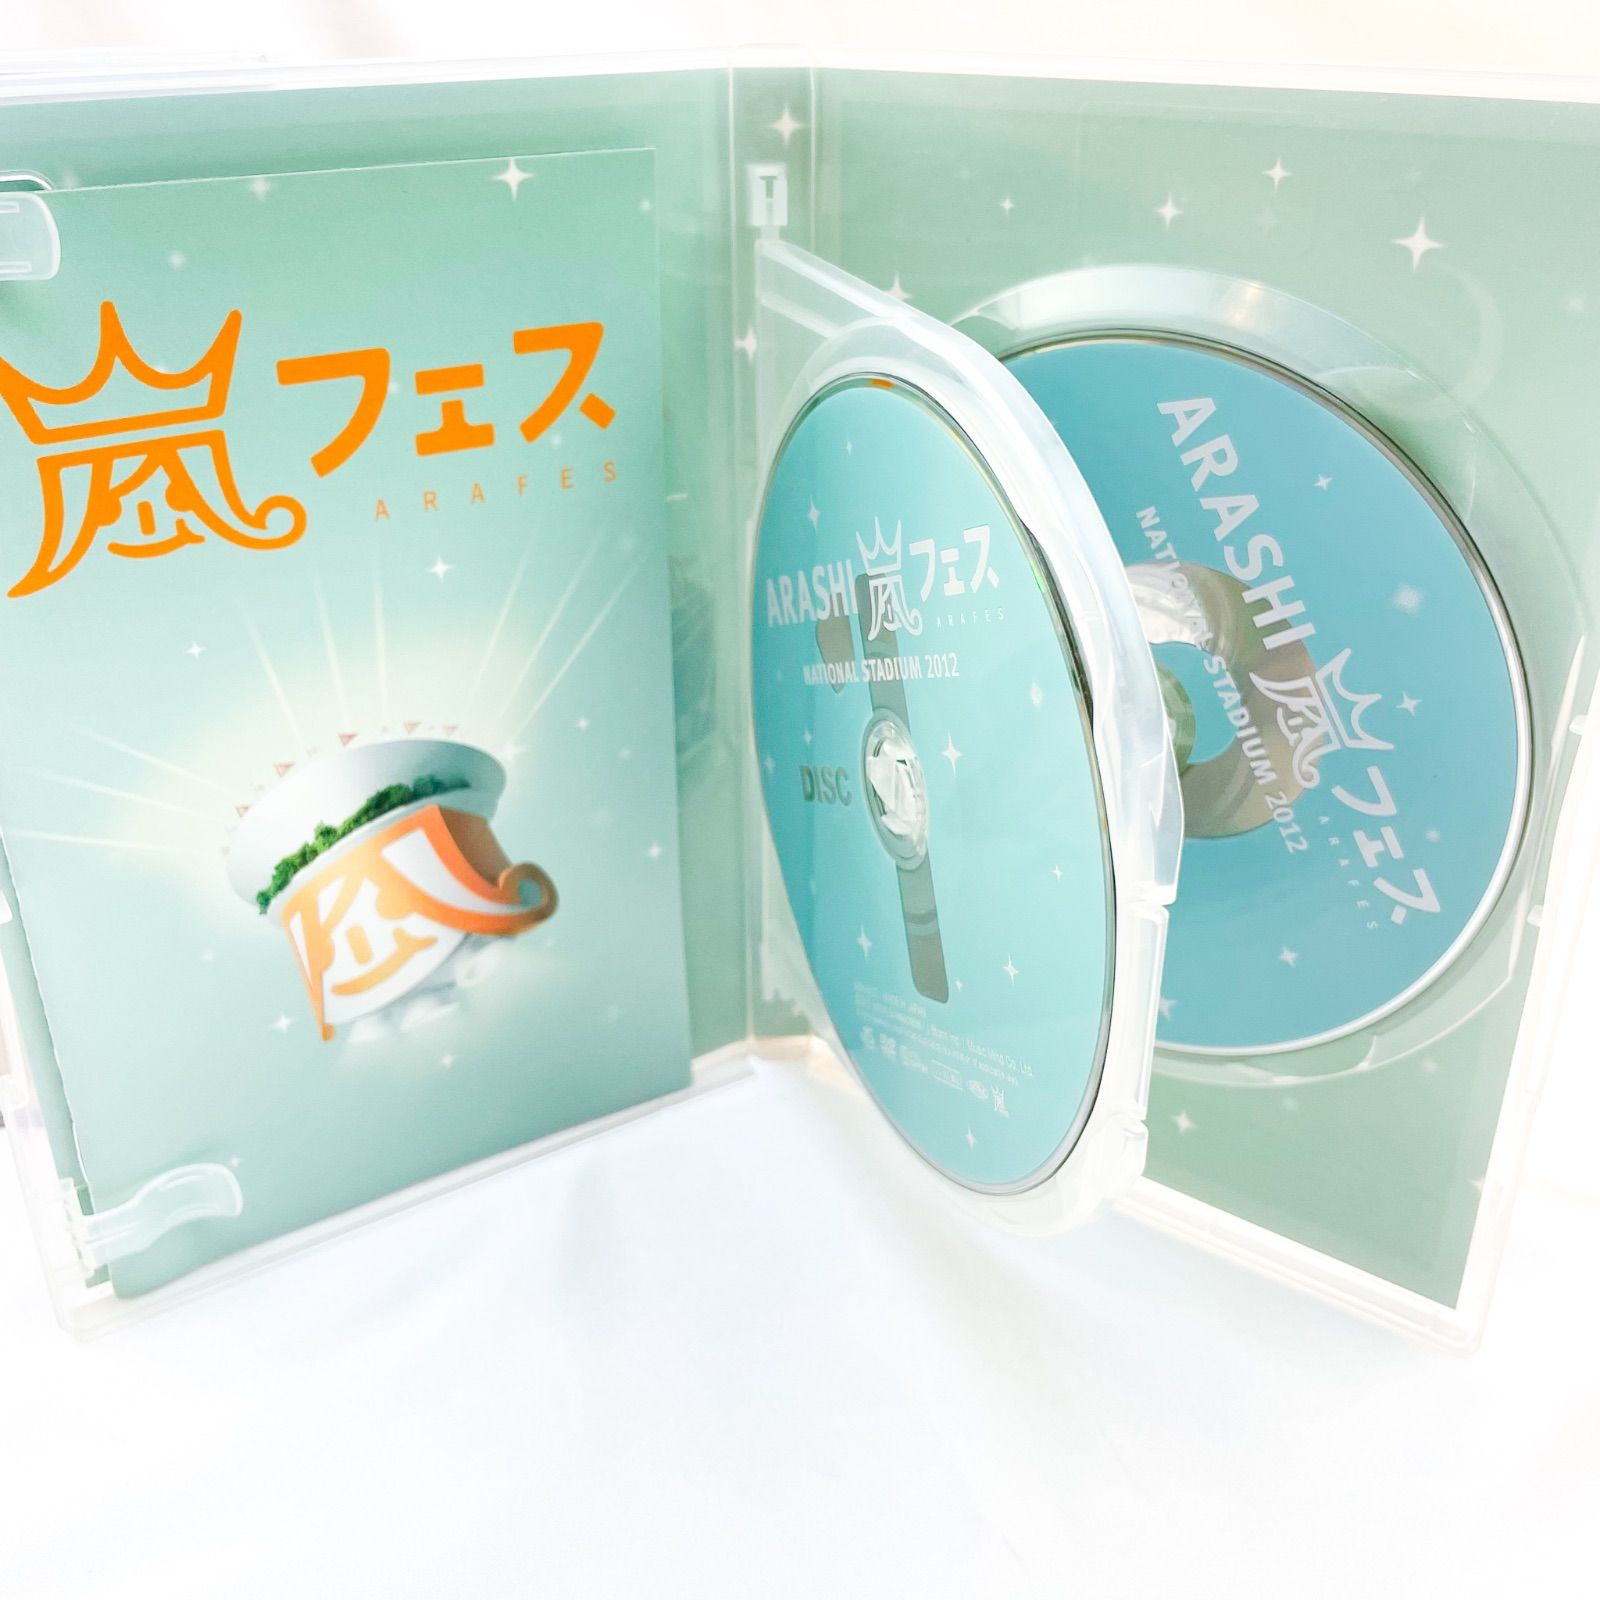 嵐 アラフェス DVD 2012&2013